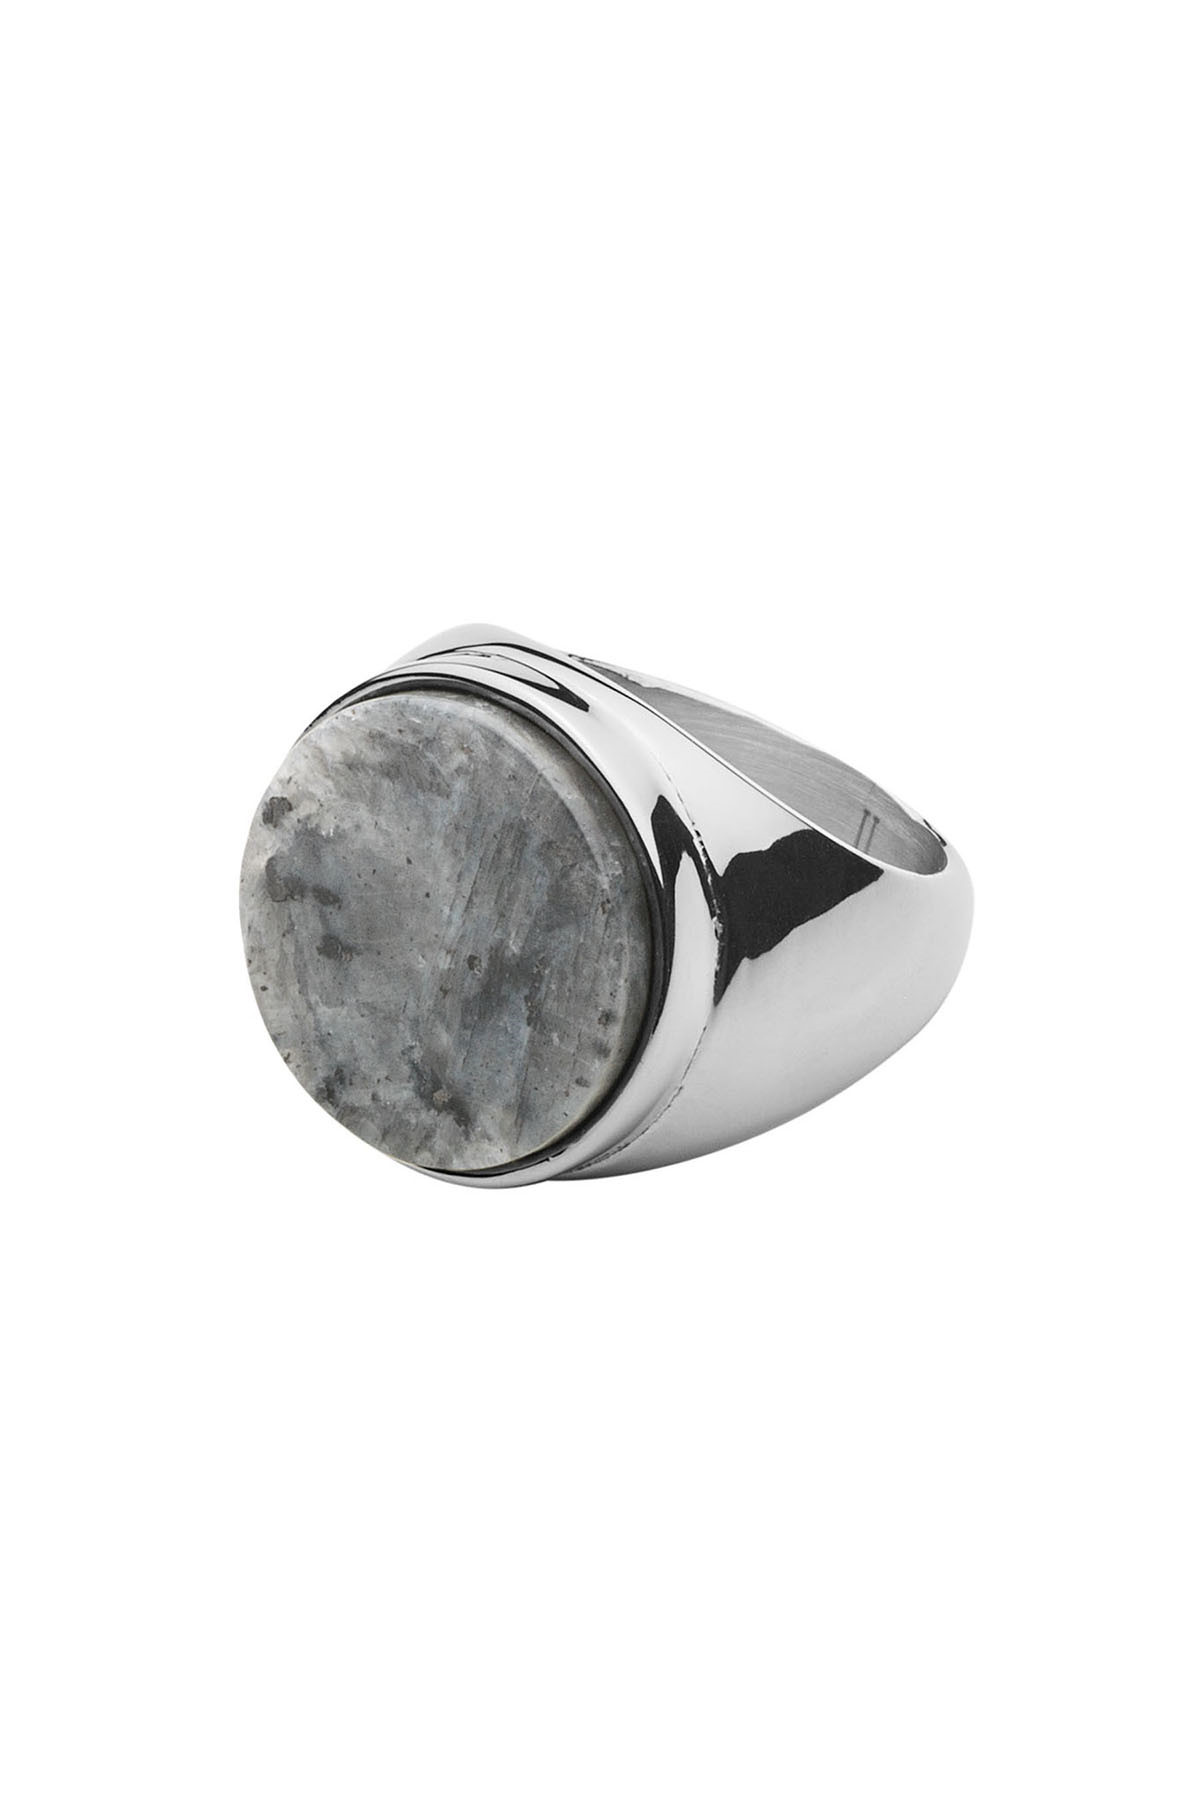 Billede af Dyrberg/Kern Castor Ring, Farve: Sølv, Størrelse: IIII/60, Dame